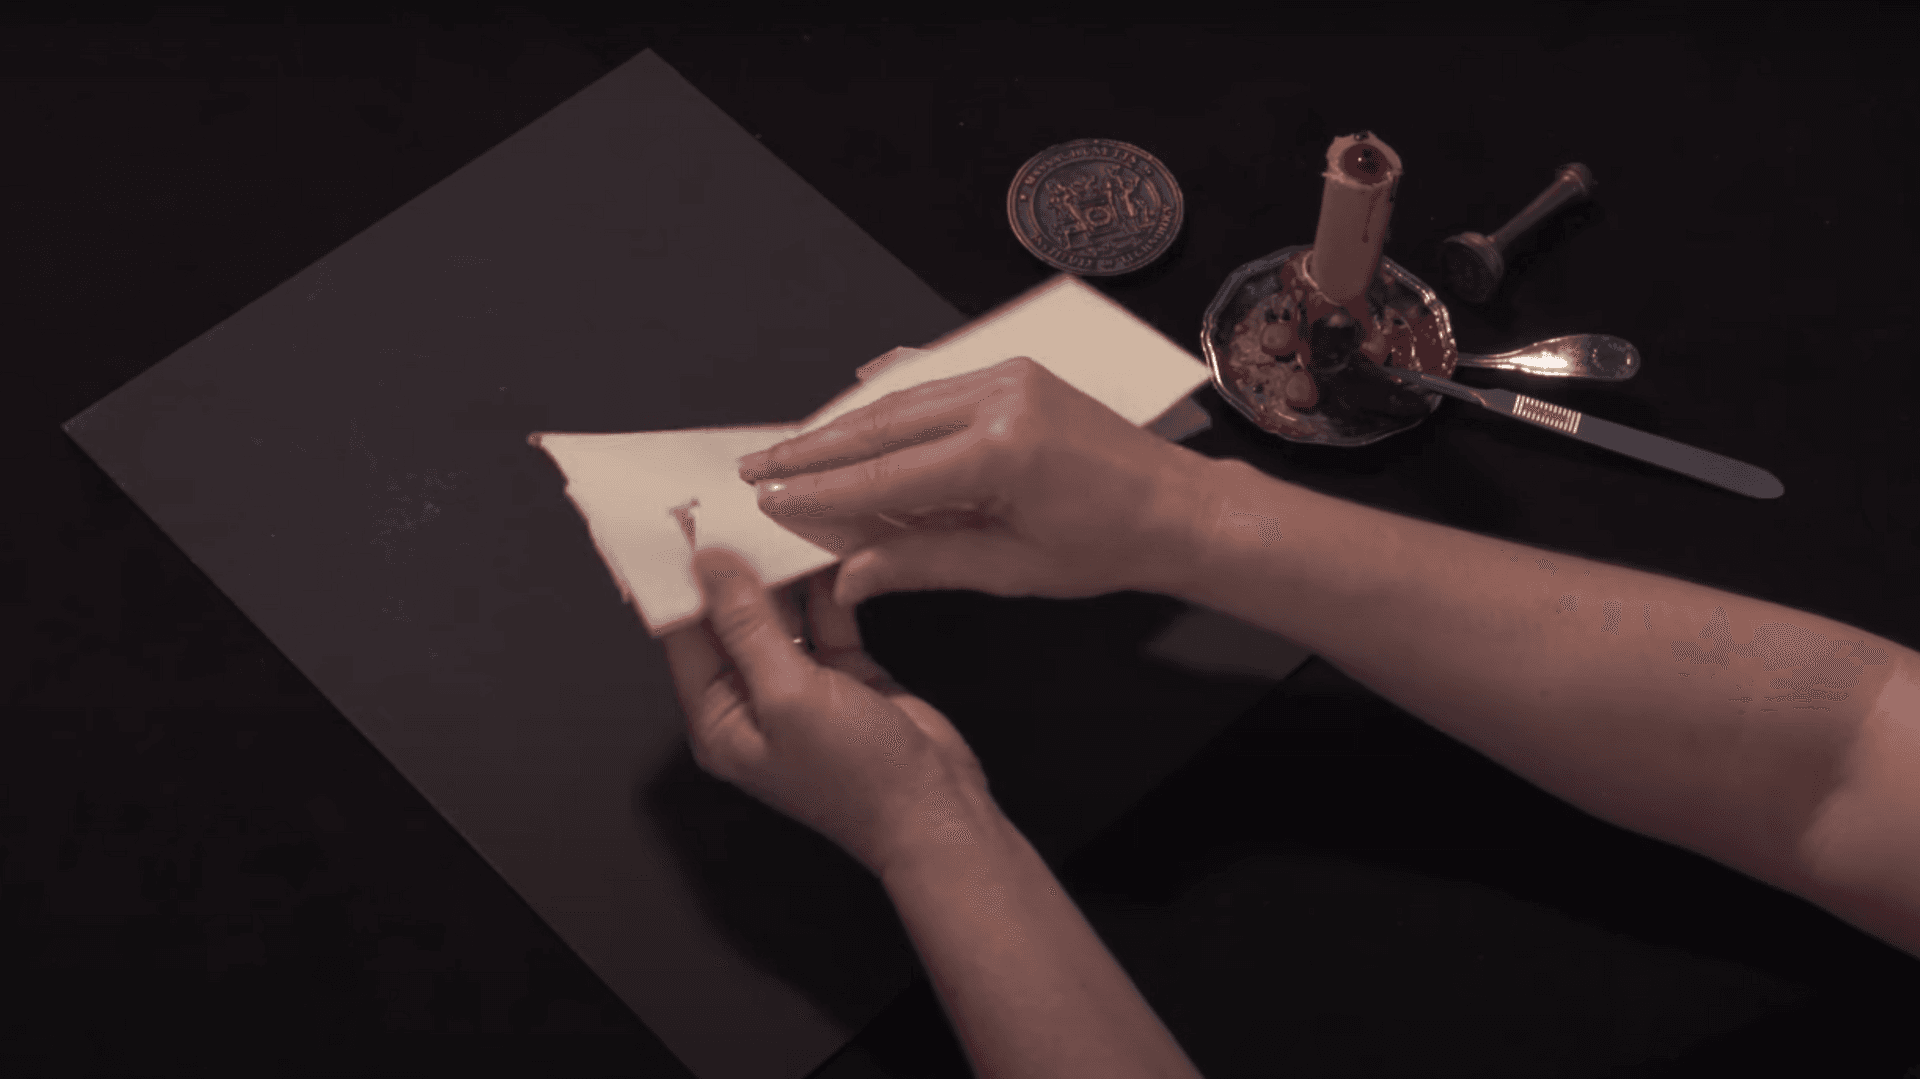 Hands fold a sheet of paper 